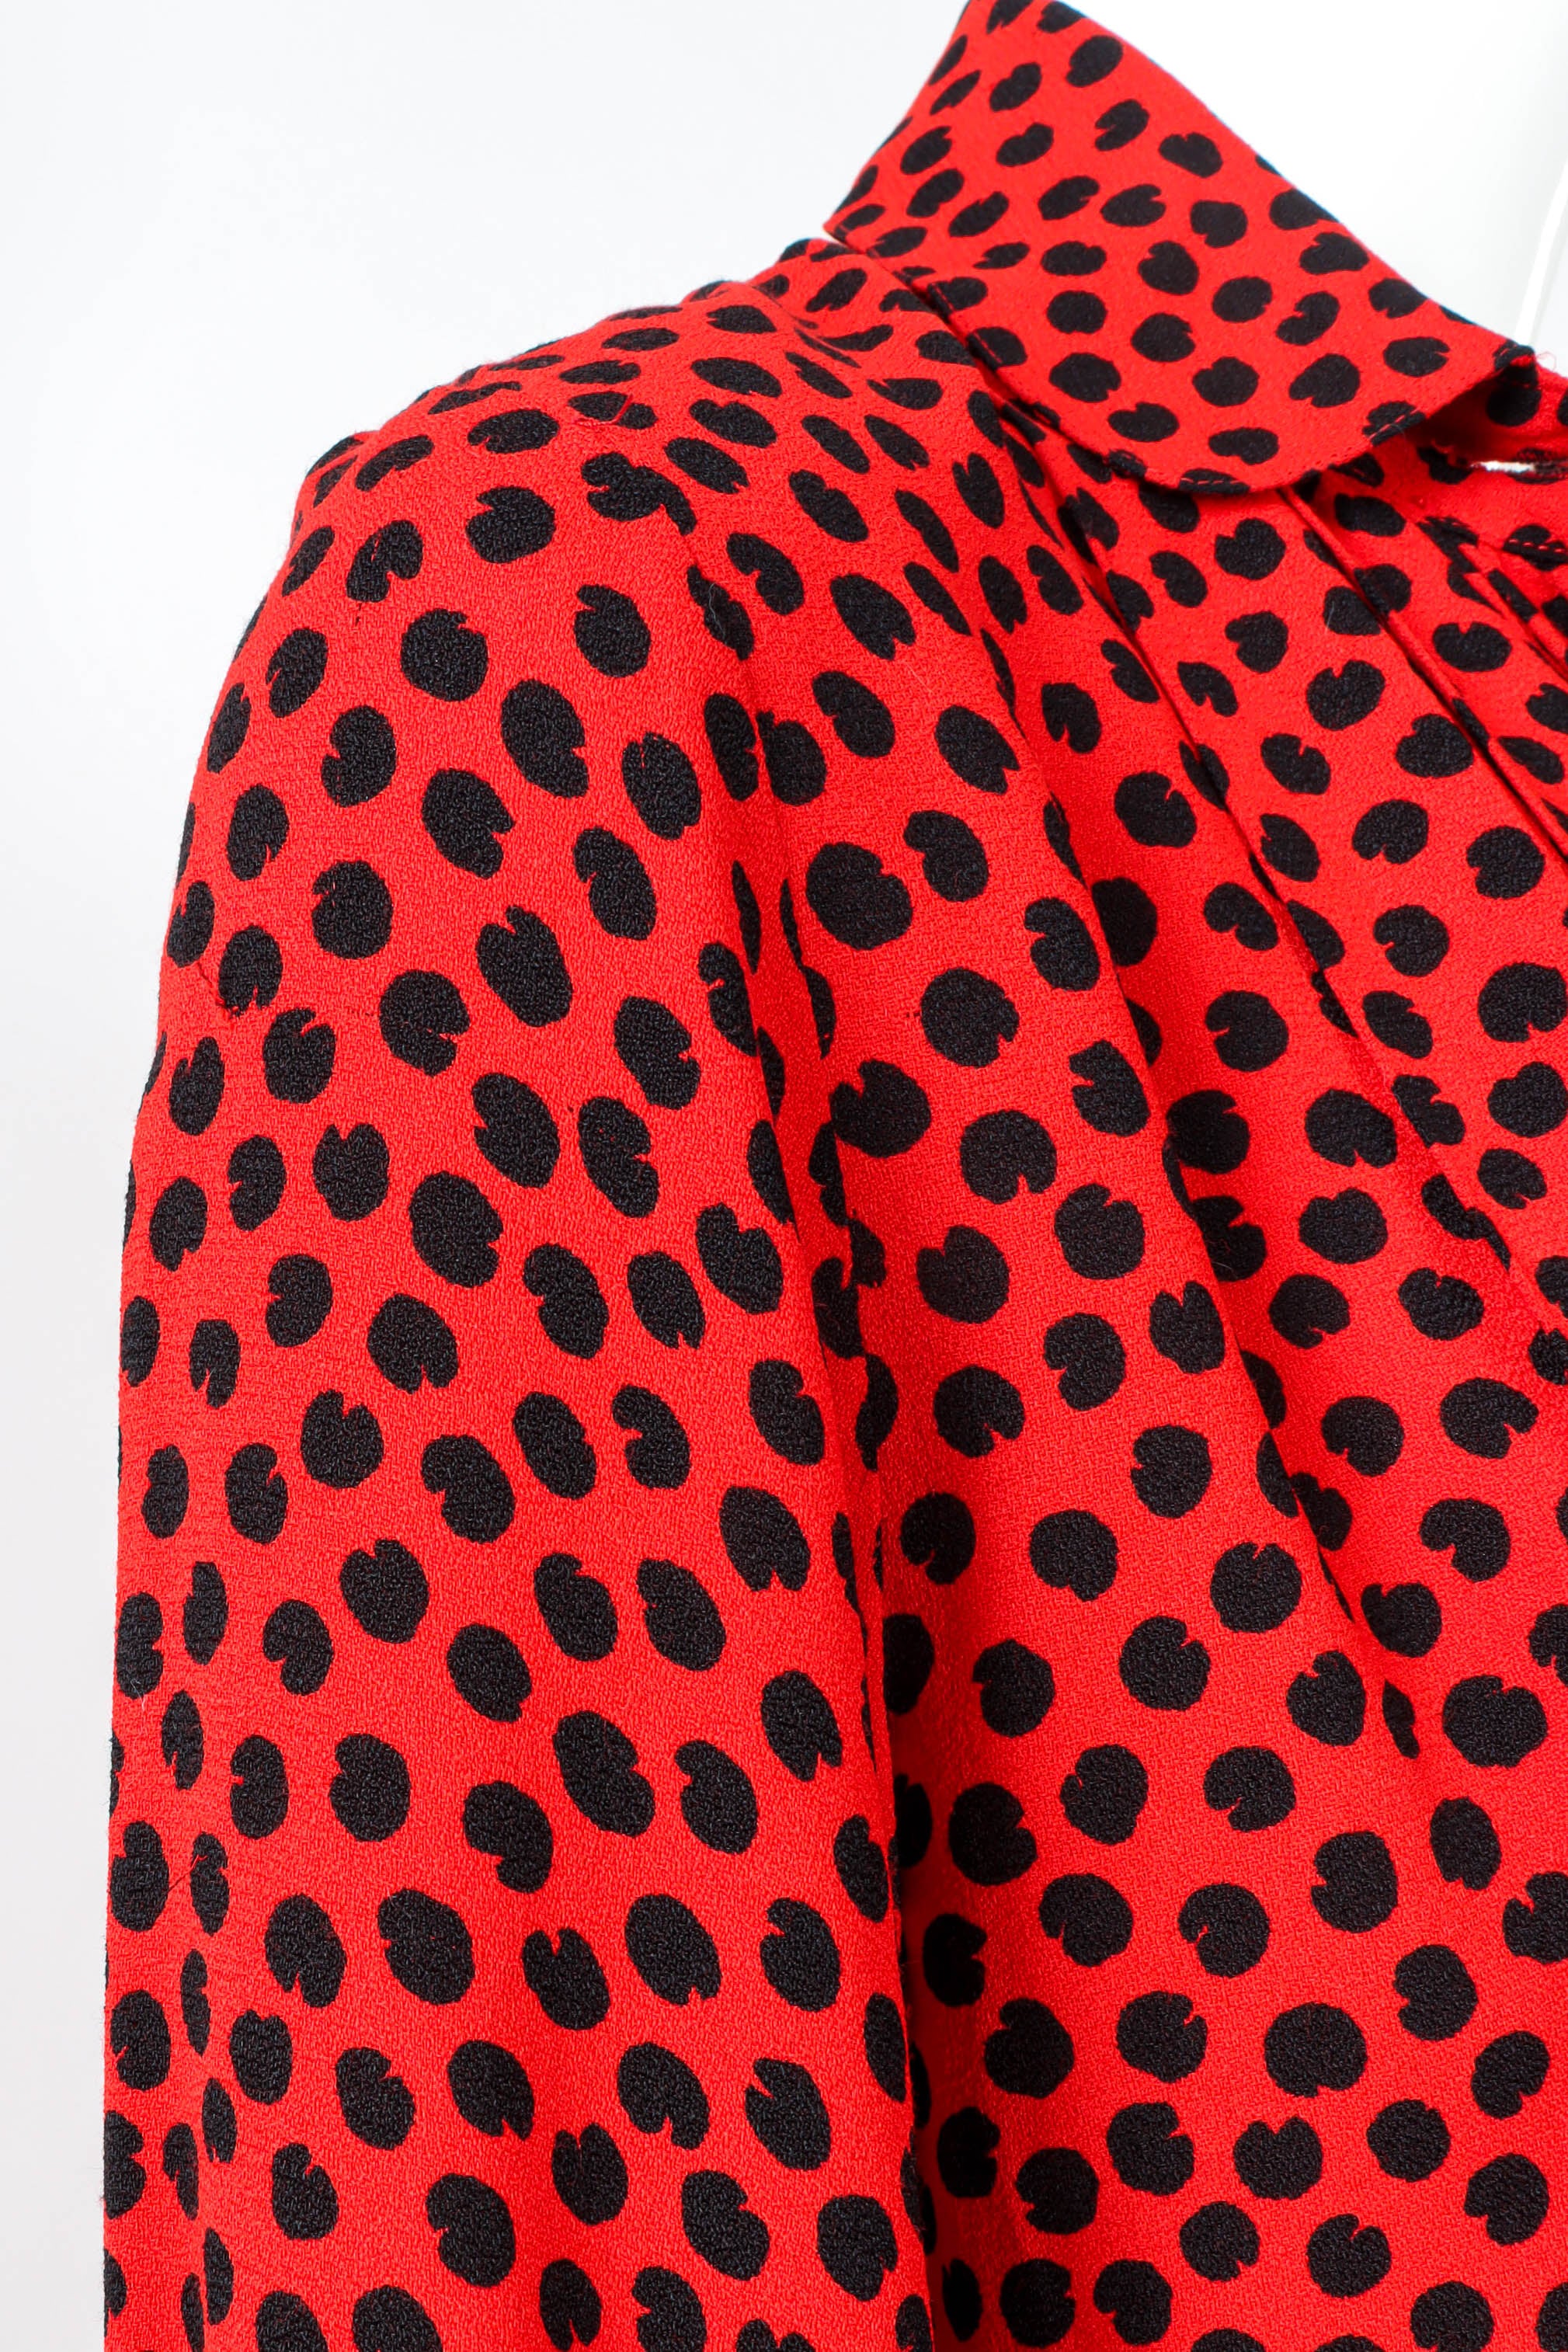 Vintage Saint Laurent Abstract Dot Print Dress shoulder detail @ Recess LA